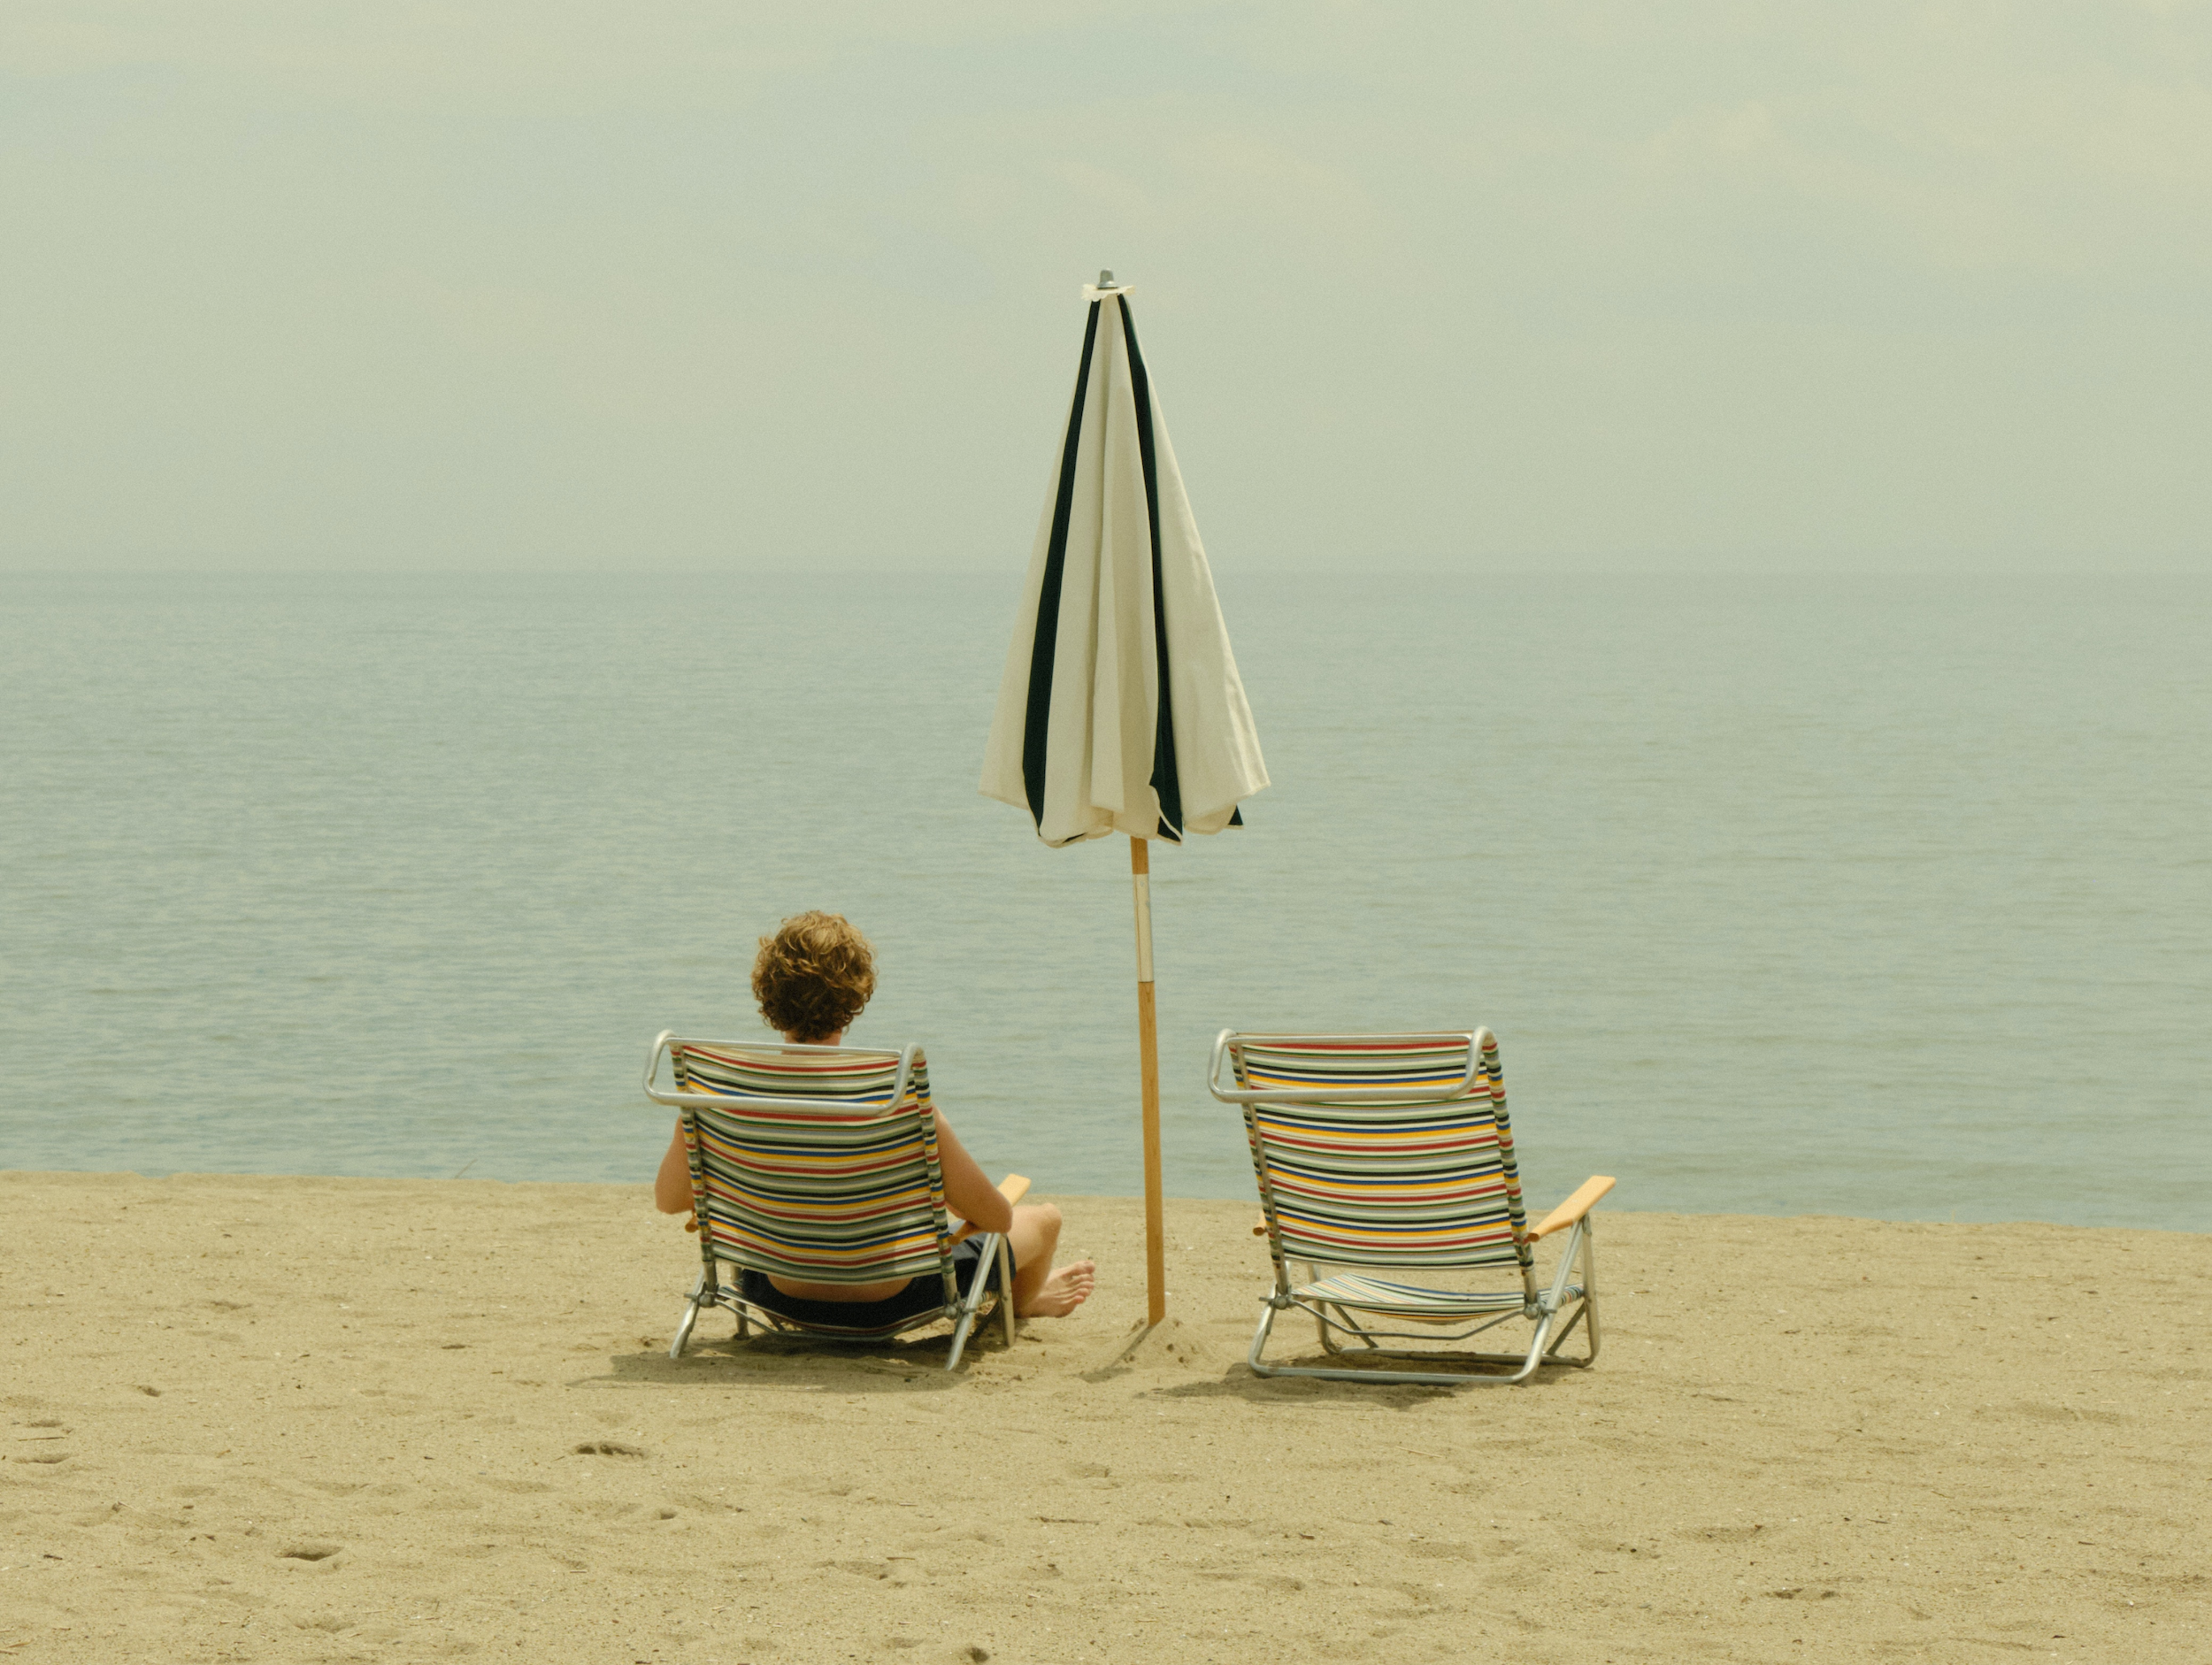 Eine Person liegt am Strand auf einer Liege. Eine weitere Liege rechts neben ihr ist frei. Dazwischen steht ein Sonnenschirm, der nicht aufgeklappt ist. Die Person schaut aufs Meer.